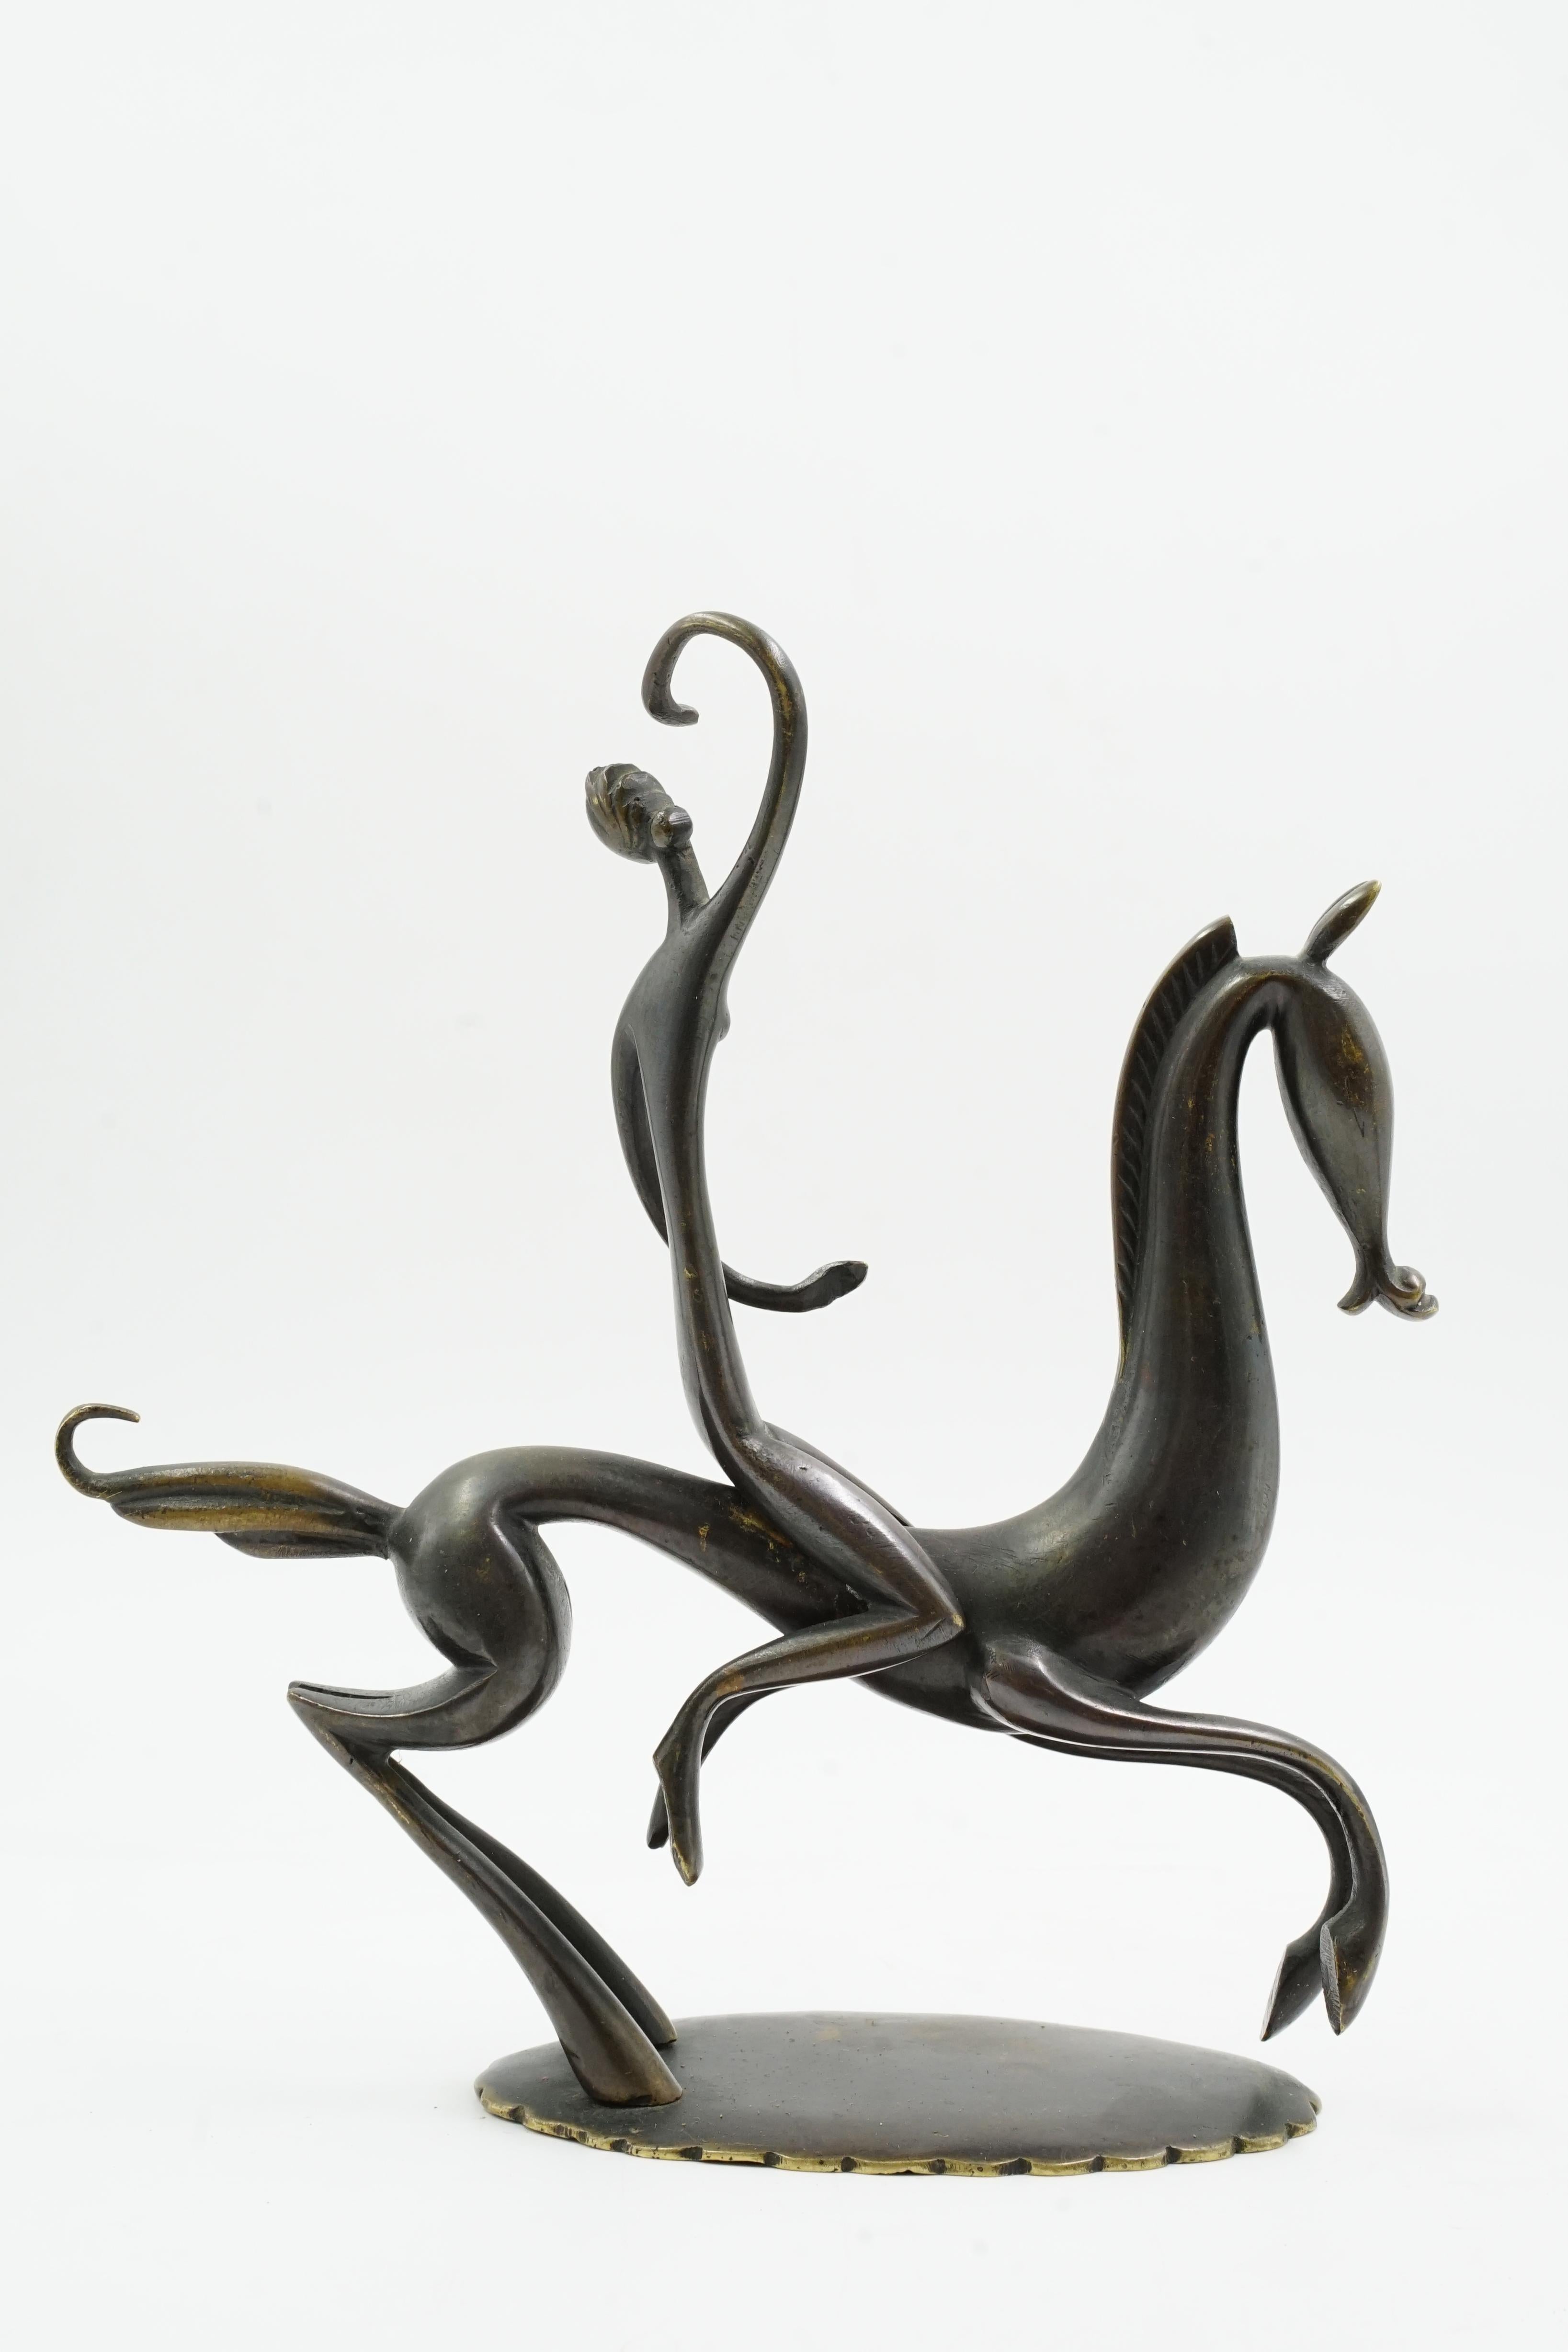 Karl Hagenauer sculpture en bronze femme à cheval
Sculpture de femme à cheval dans un mouvement de style art déco
Circa 1930 Origine Vienne Autriche
Cette sculpture est en excellent état.
avec sa patine d'origine et l'usure naturelle due à ses